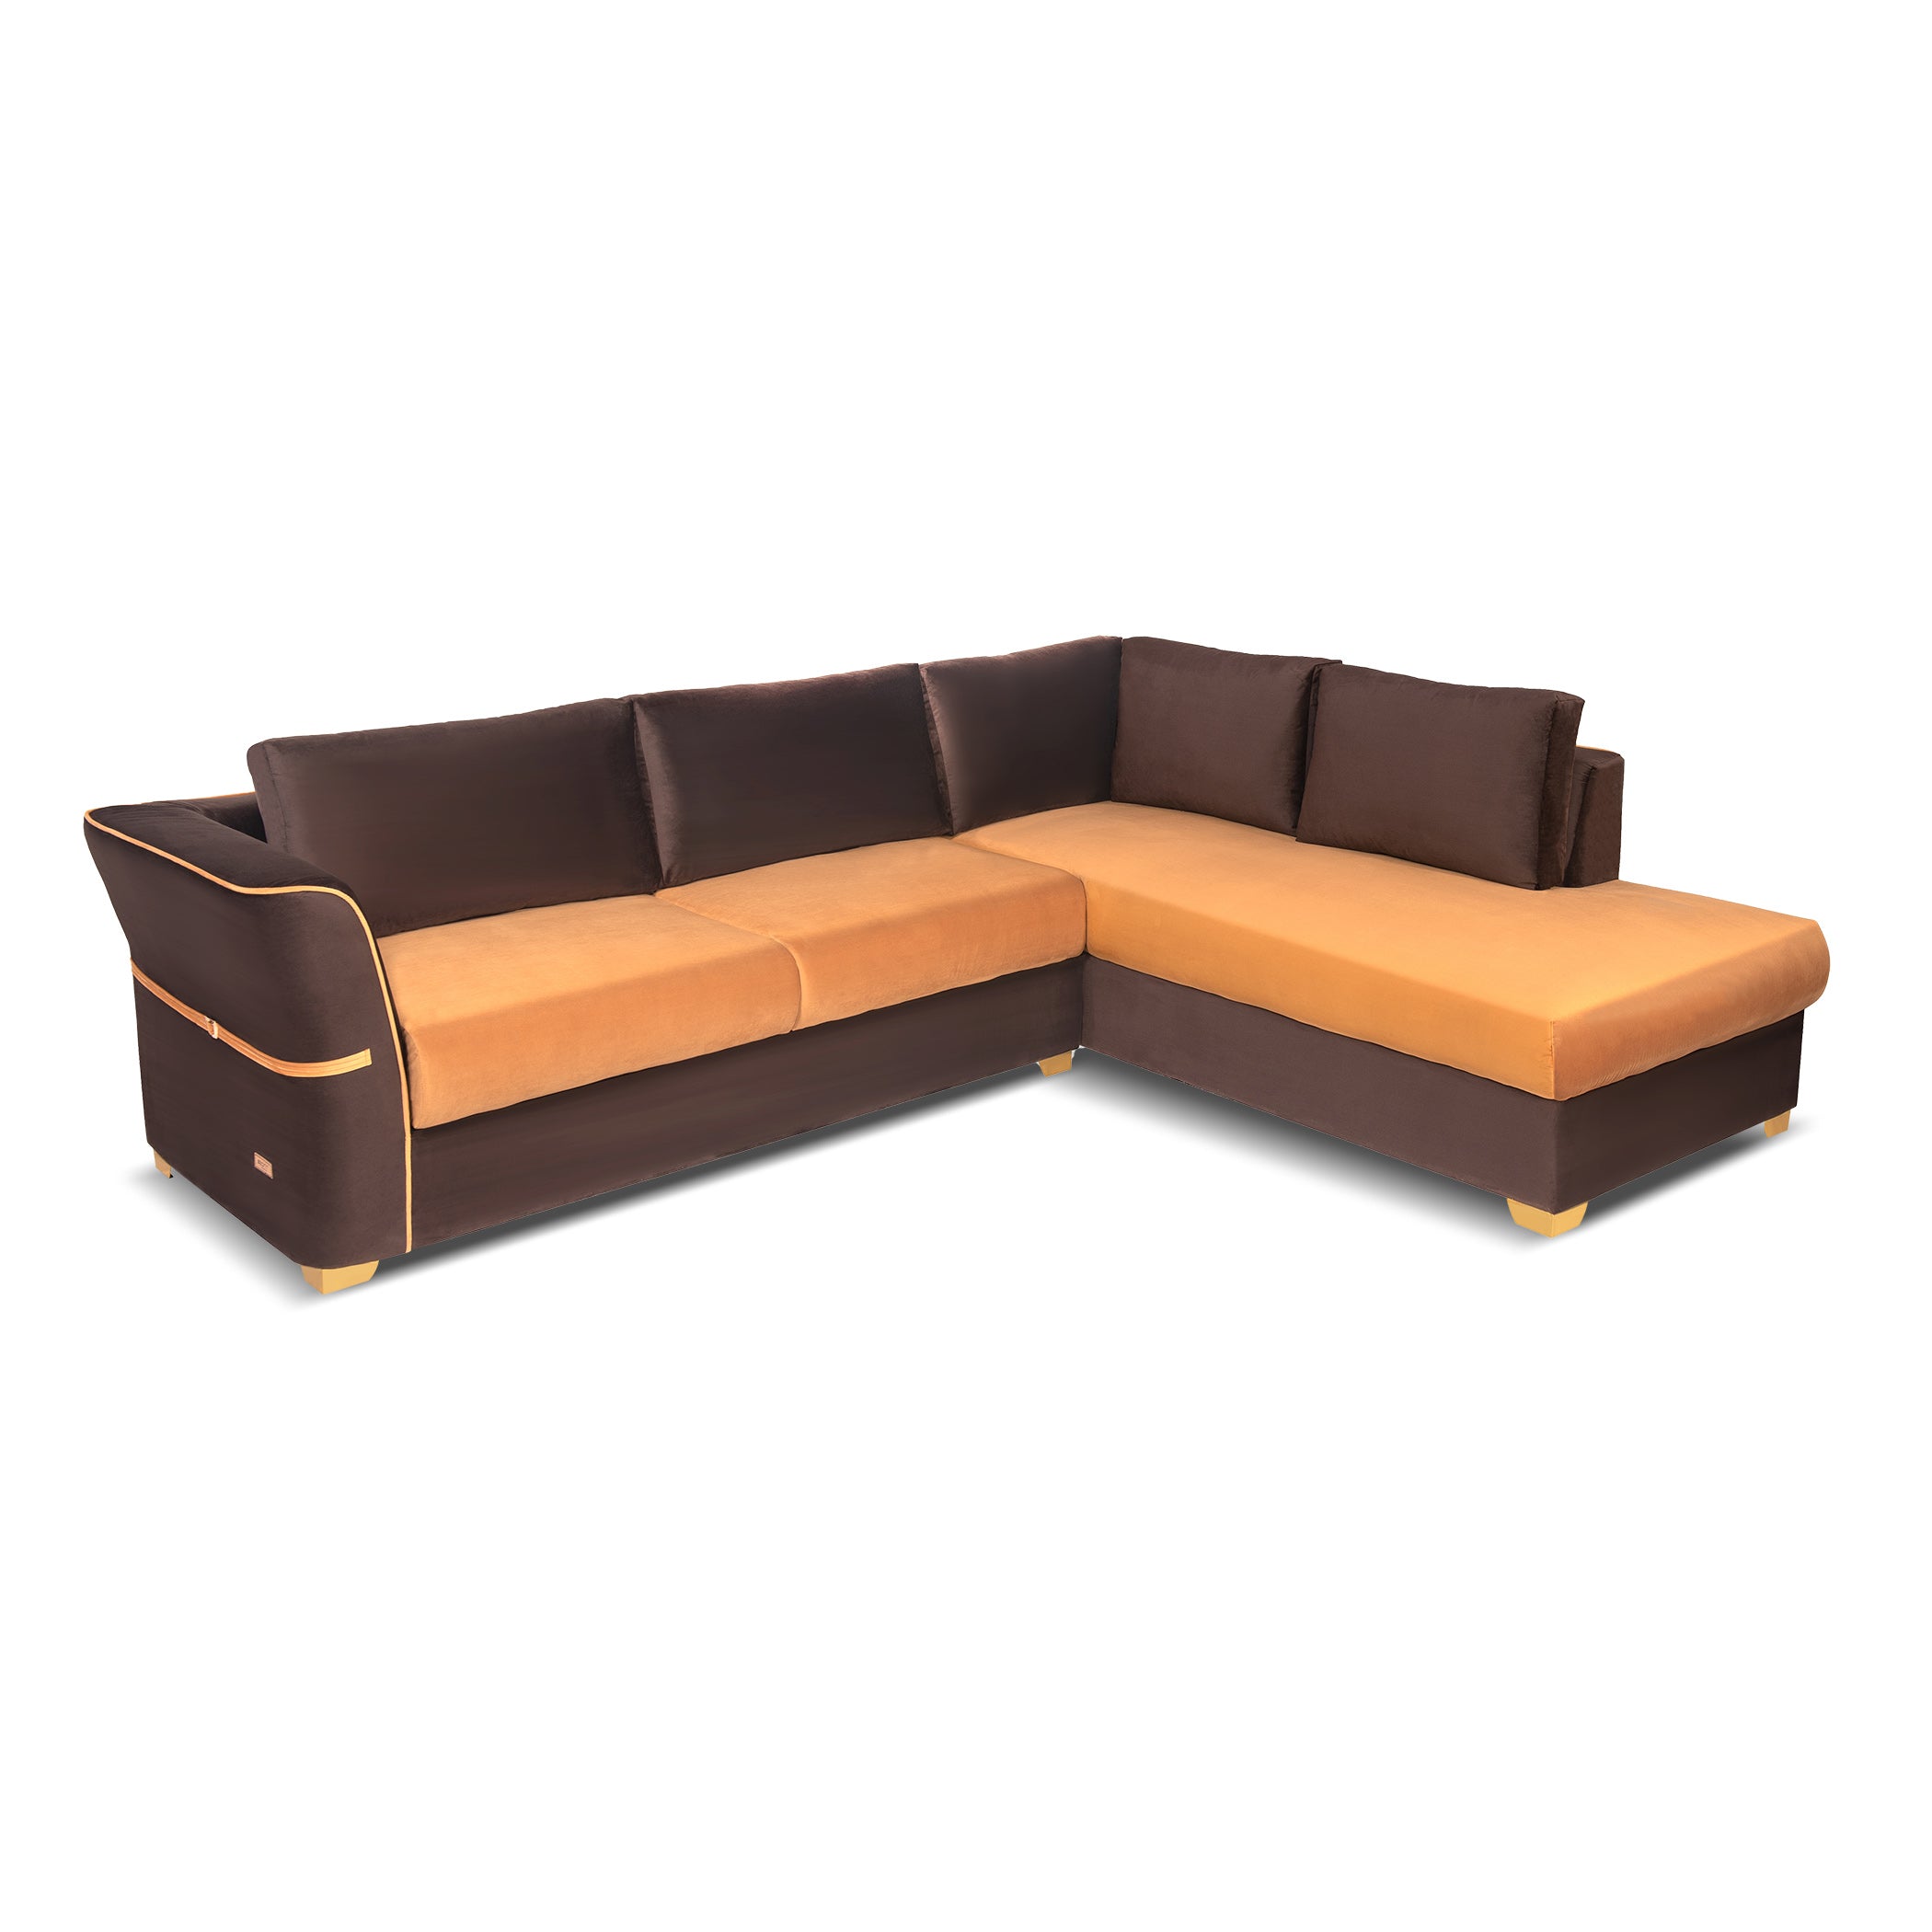 NewYork BrownYellow 9*7C Sofa by Zorin Zorin